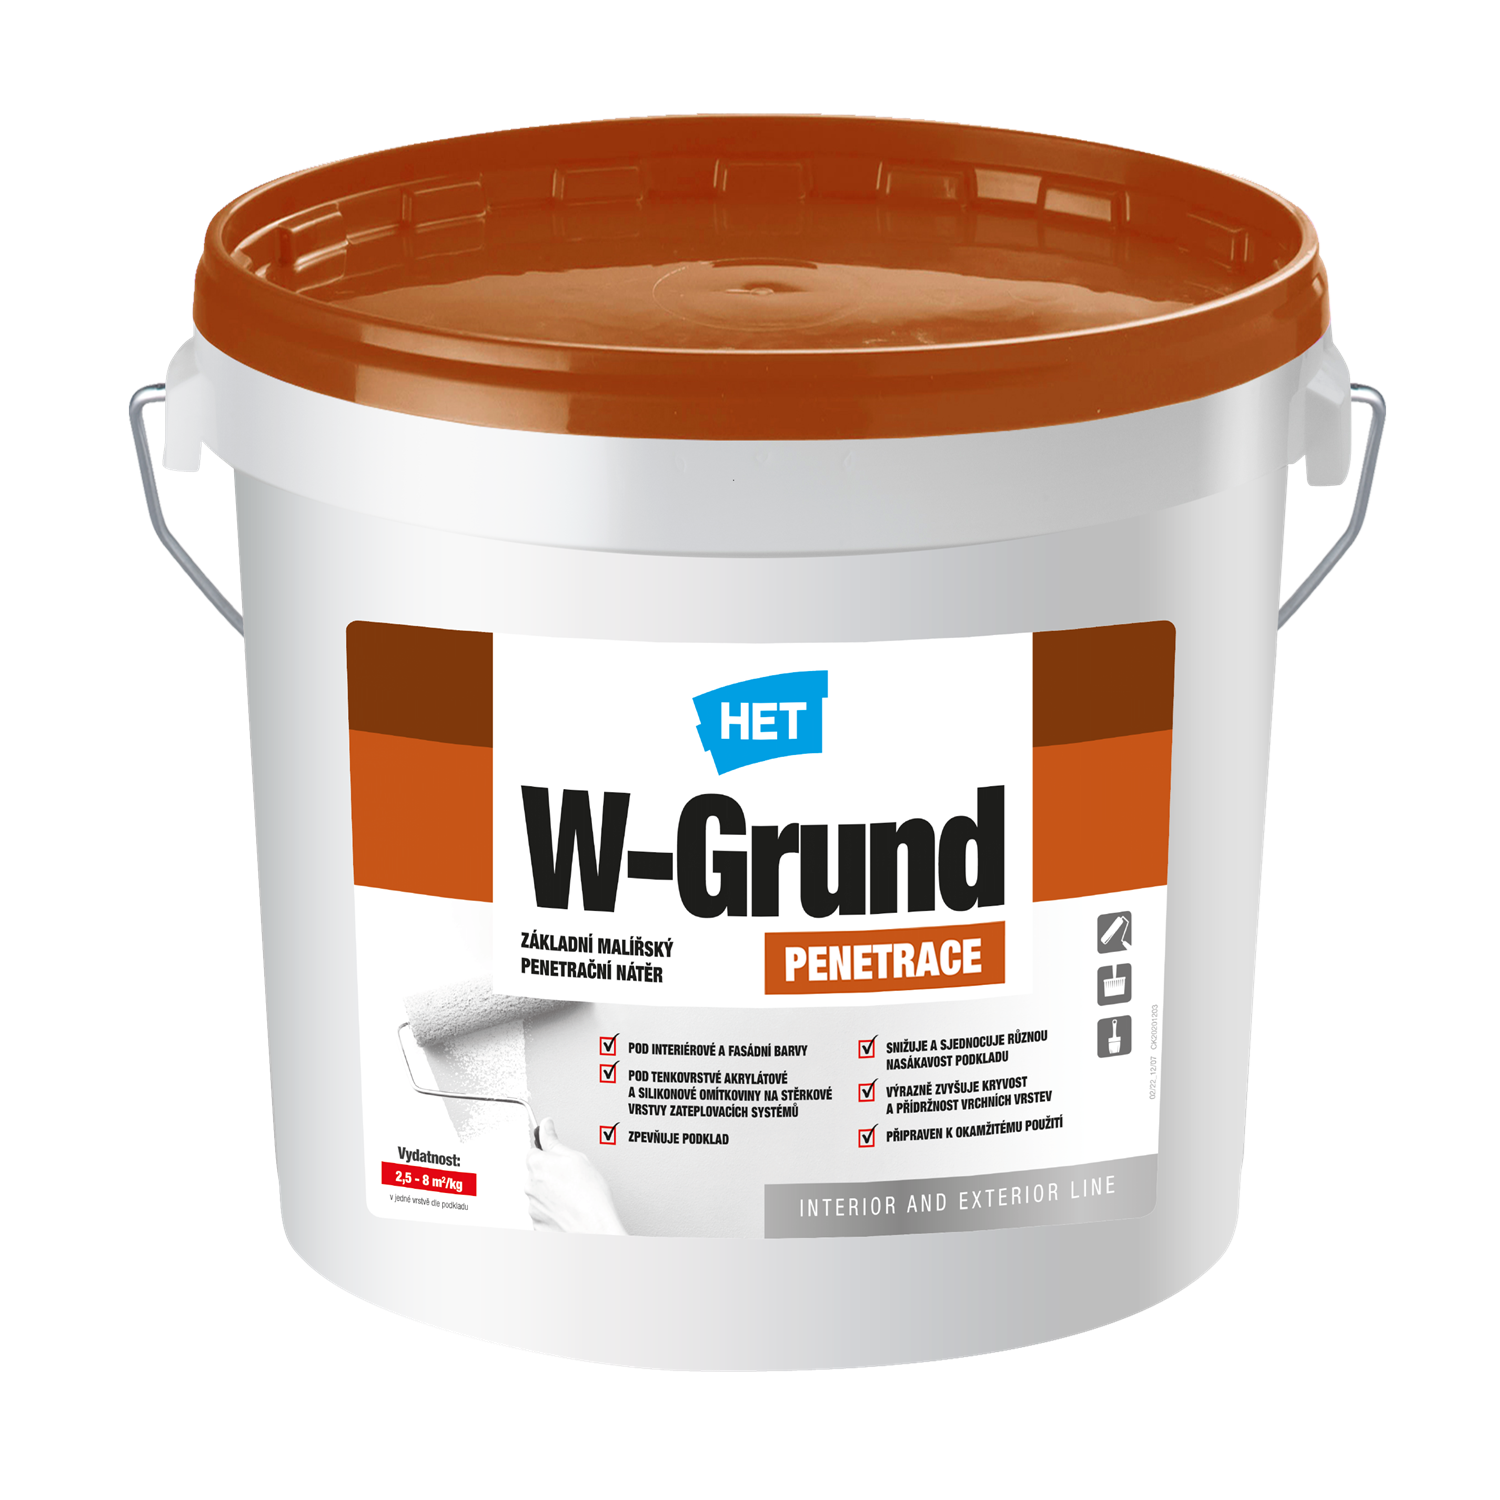 HET W-Grund základný maliarský penetračný náter 1 kg